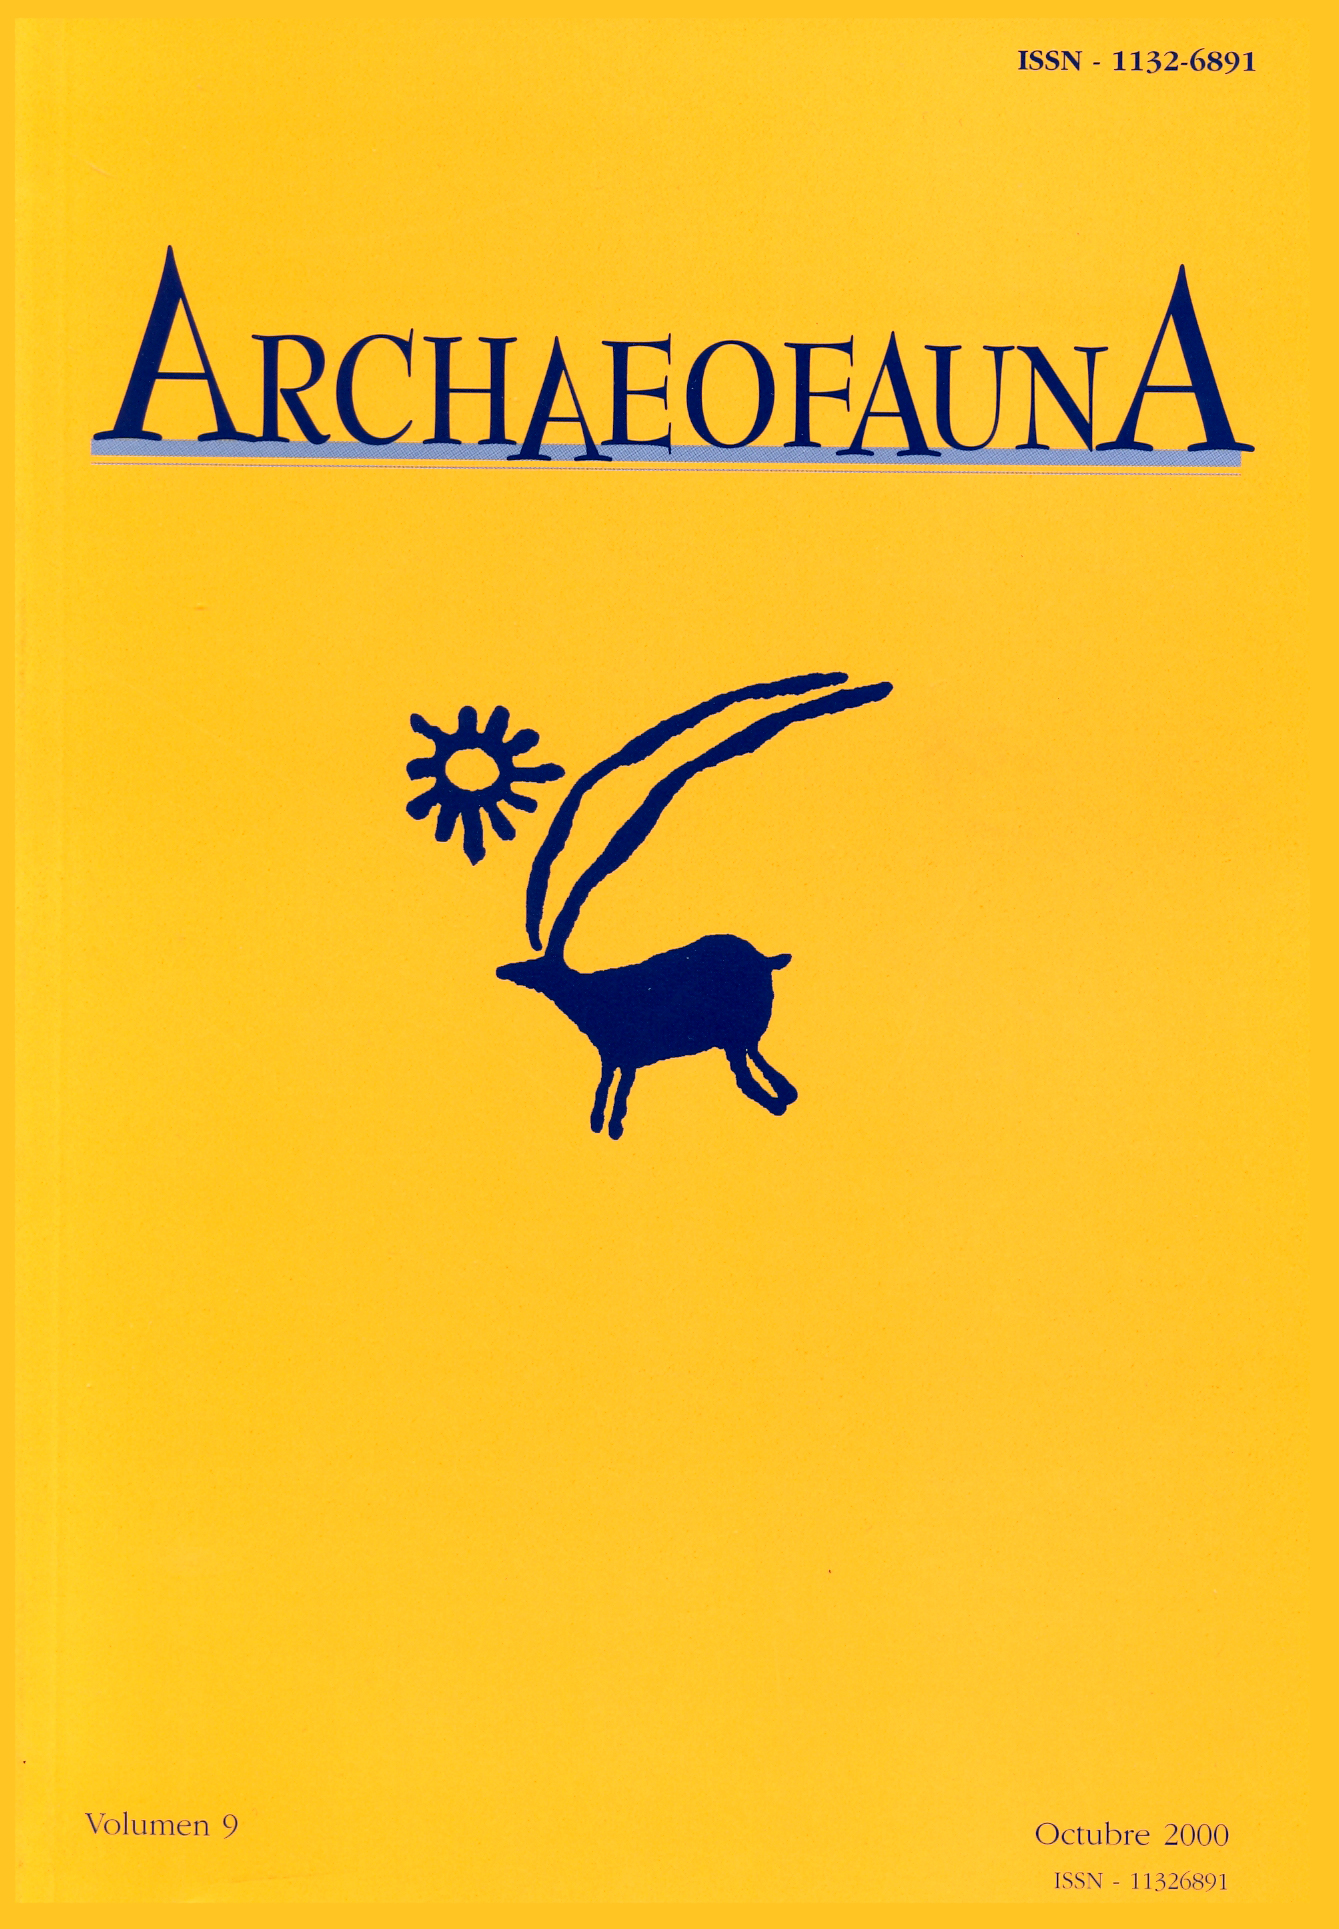 Portada del volumen 9 de ARCHAEOFAUNA